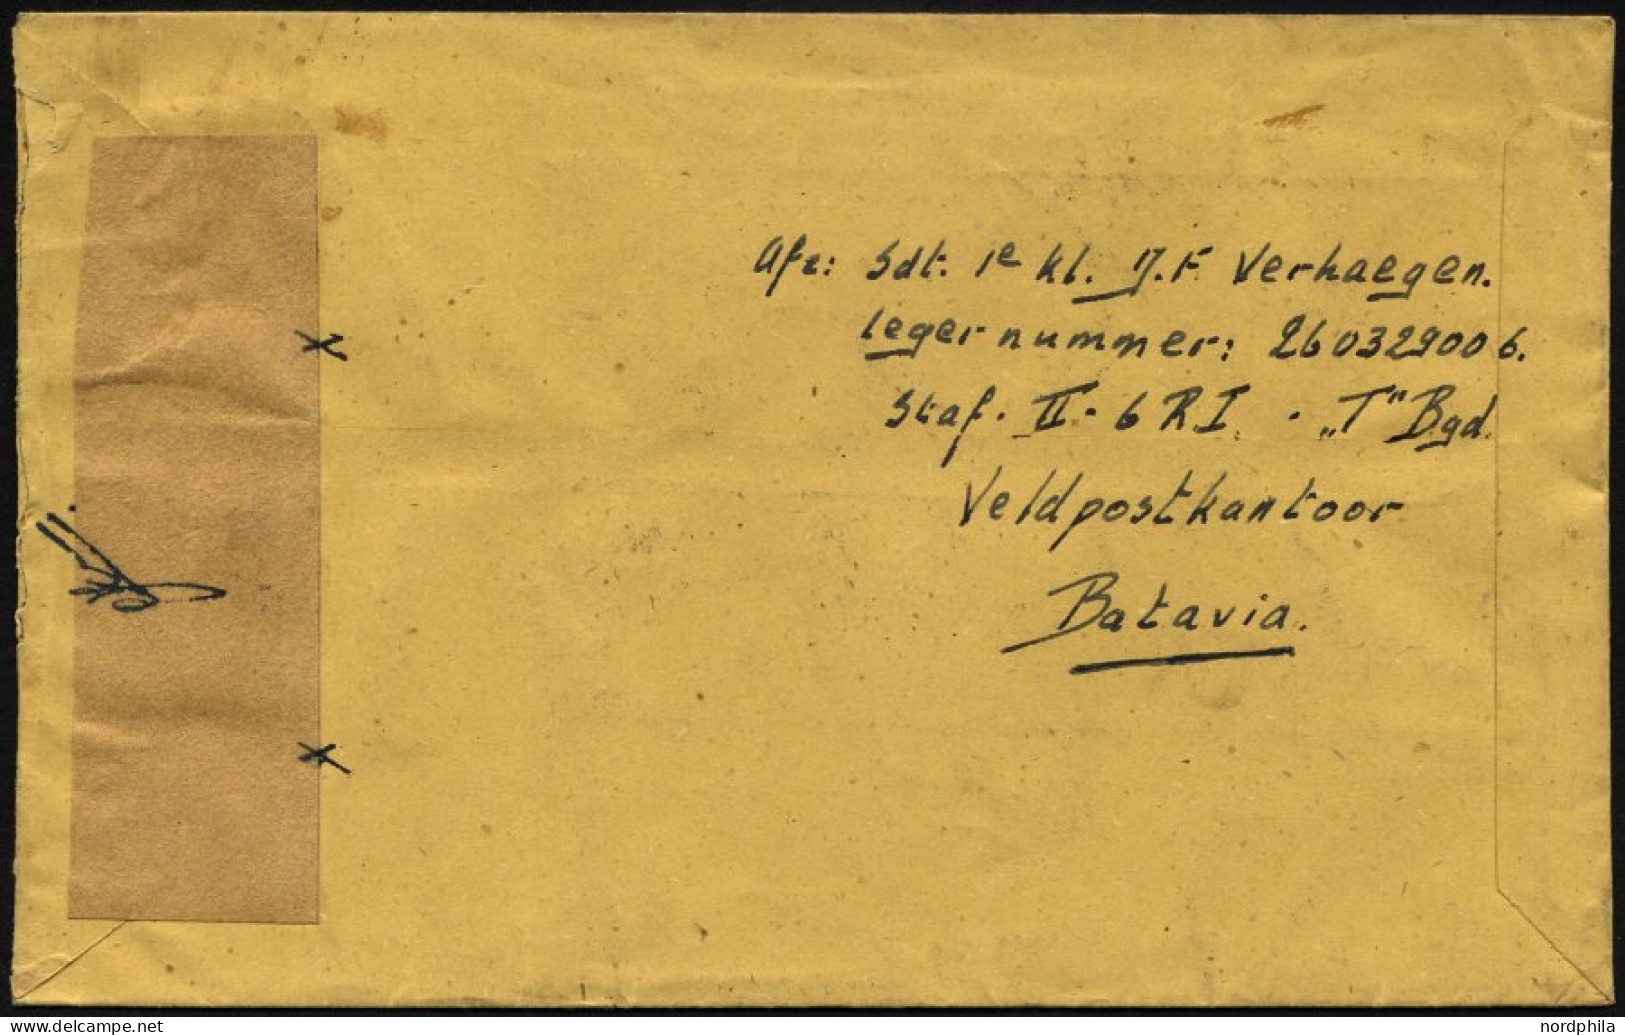 NIEDERLÄNDISCH-INDIEN 1947, K2 VELDPOST-SEMARANG/2/1947 Und Handschriftlich Im Aktiven Dienst Auf Luft-Feldpostbrief Von - Indes Néerlandaises